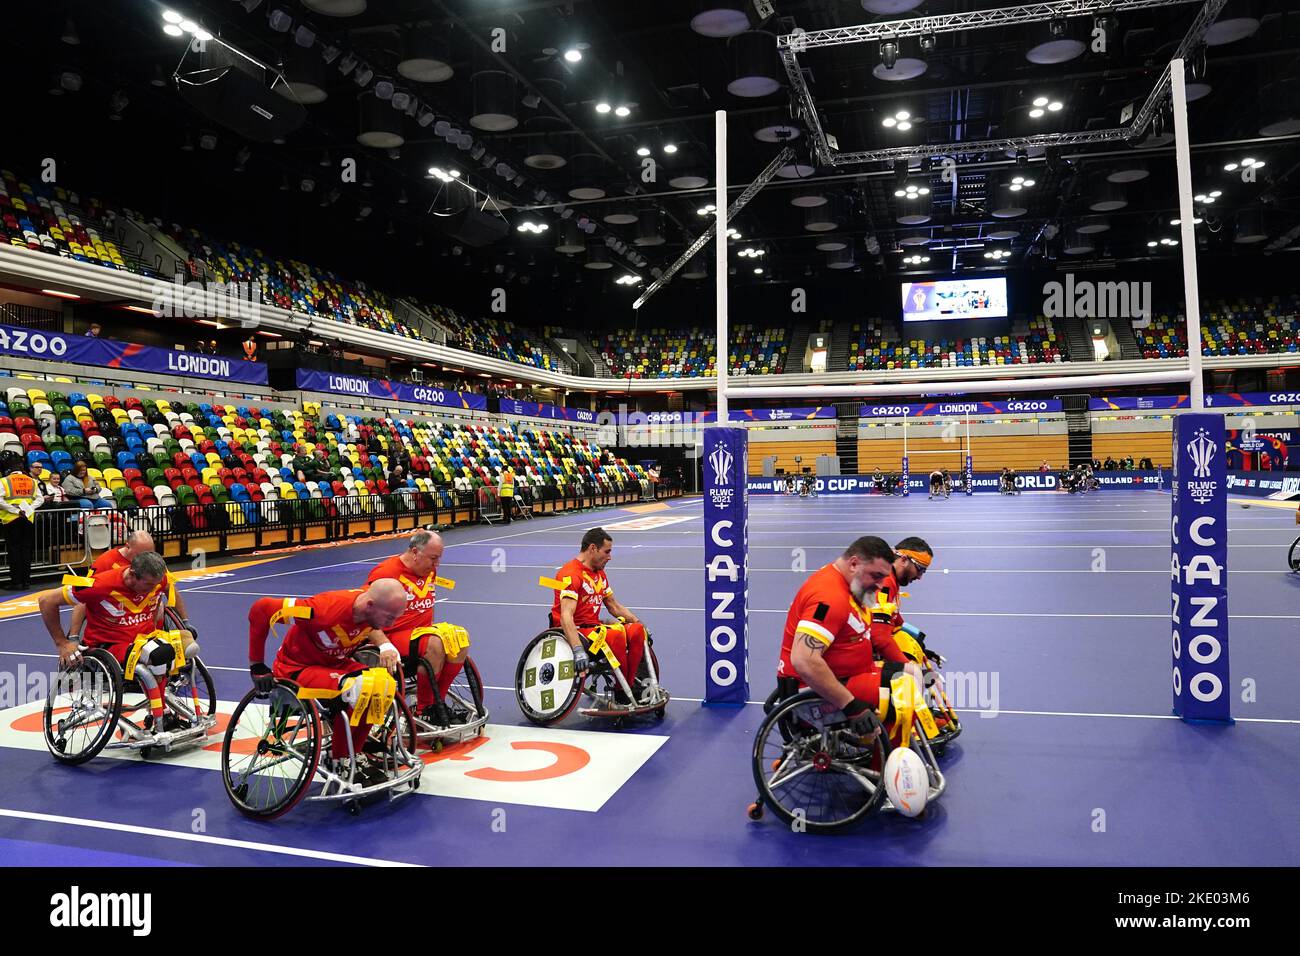 Spanien wärmt sich vor dem Wheelchair Rugby League World Cup-Spiel der Gruppe A in der Copper Box Arena in London auf. Bilddatum: Mittwoch, 9. November 2022. Stockfoto